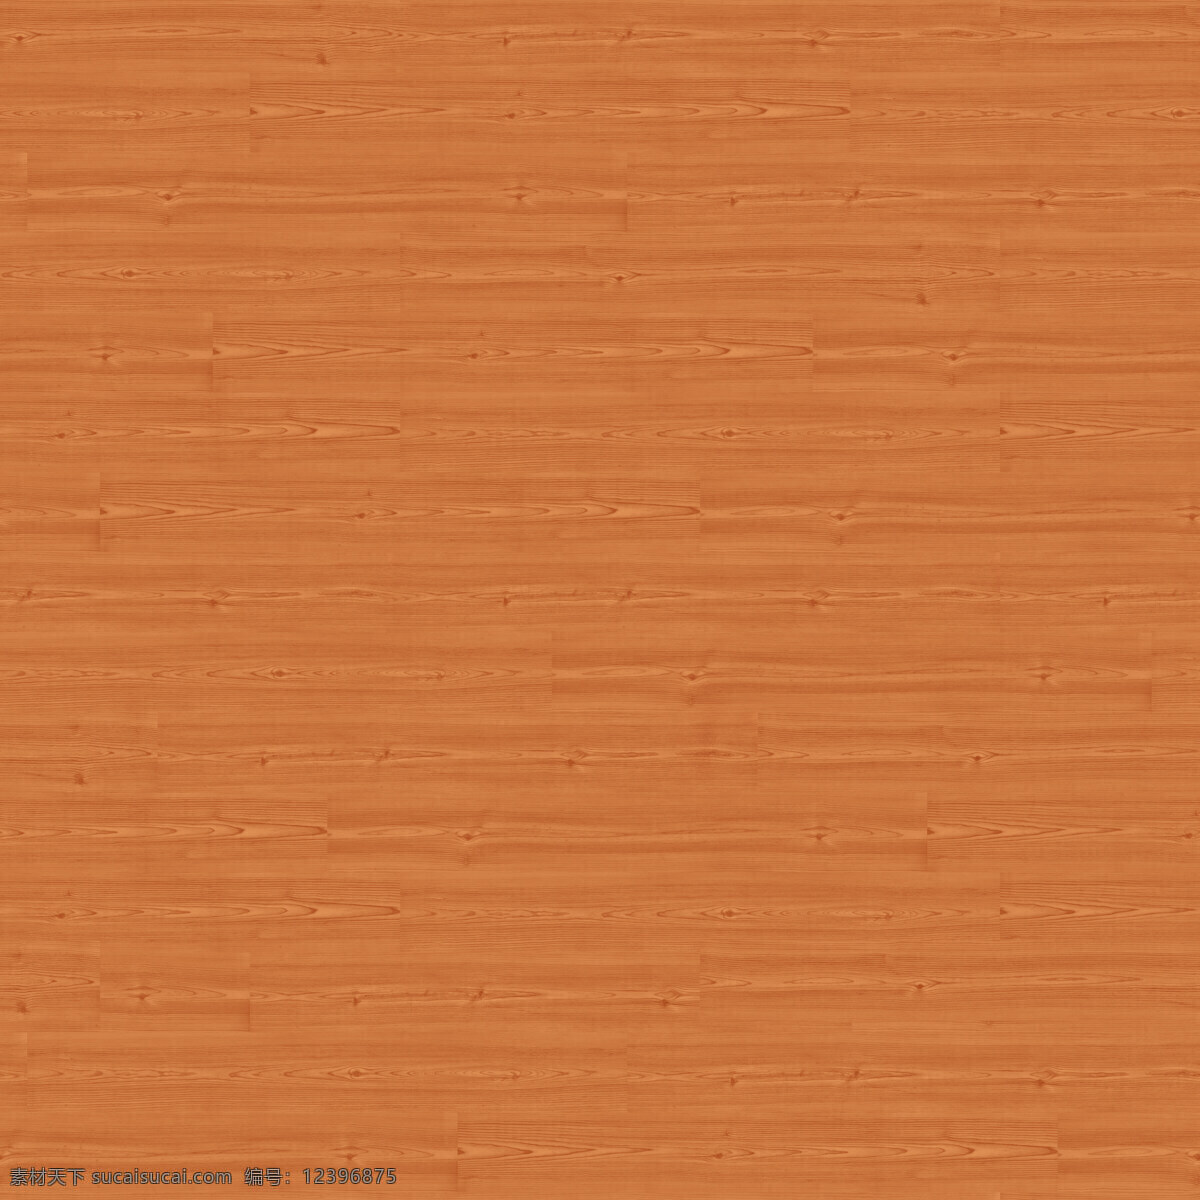 高清 黄色 木纹 贴图 背景素材 材质贴图 堆叠木纹 室内设计 木纹纹理 木质纹理 地板 木头 木板背景